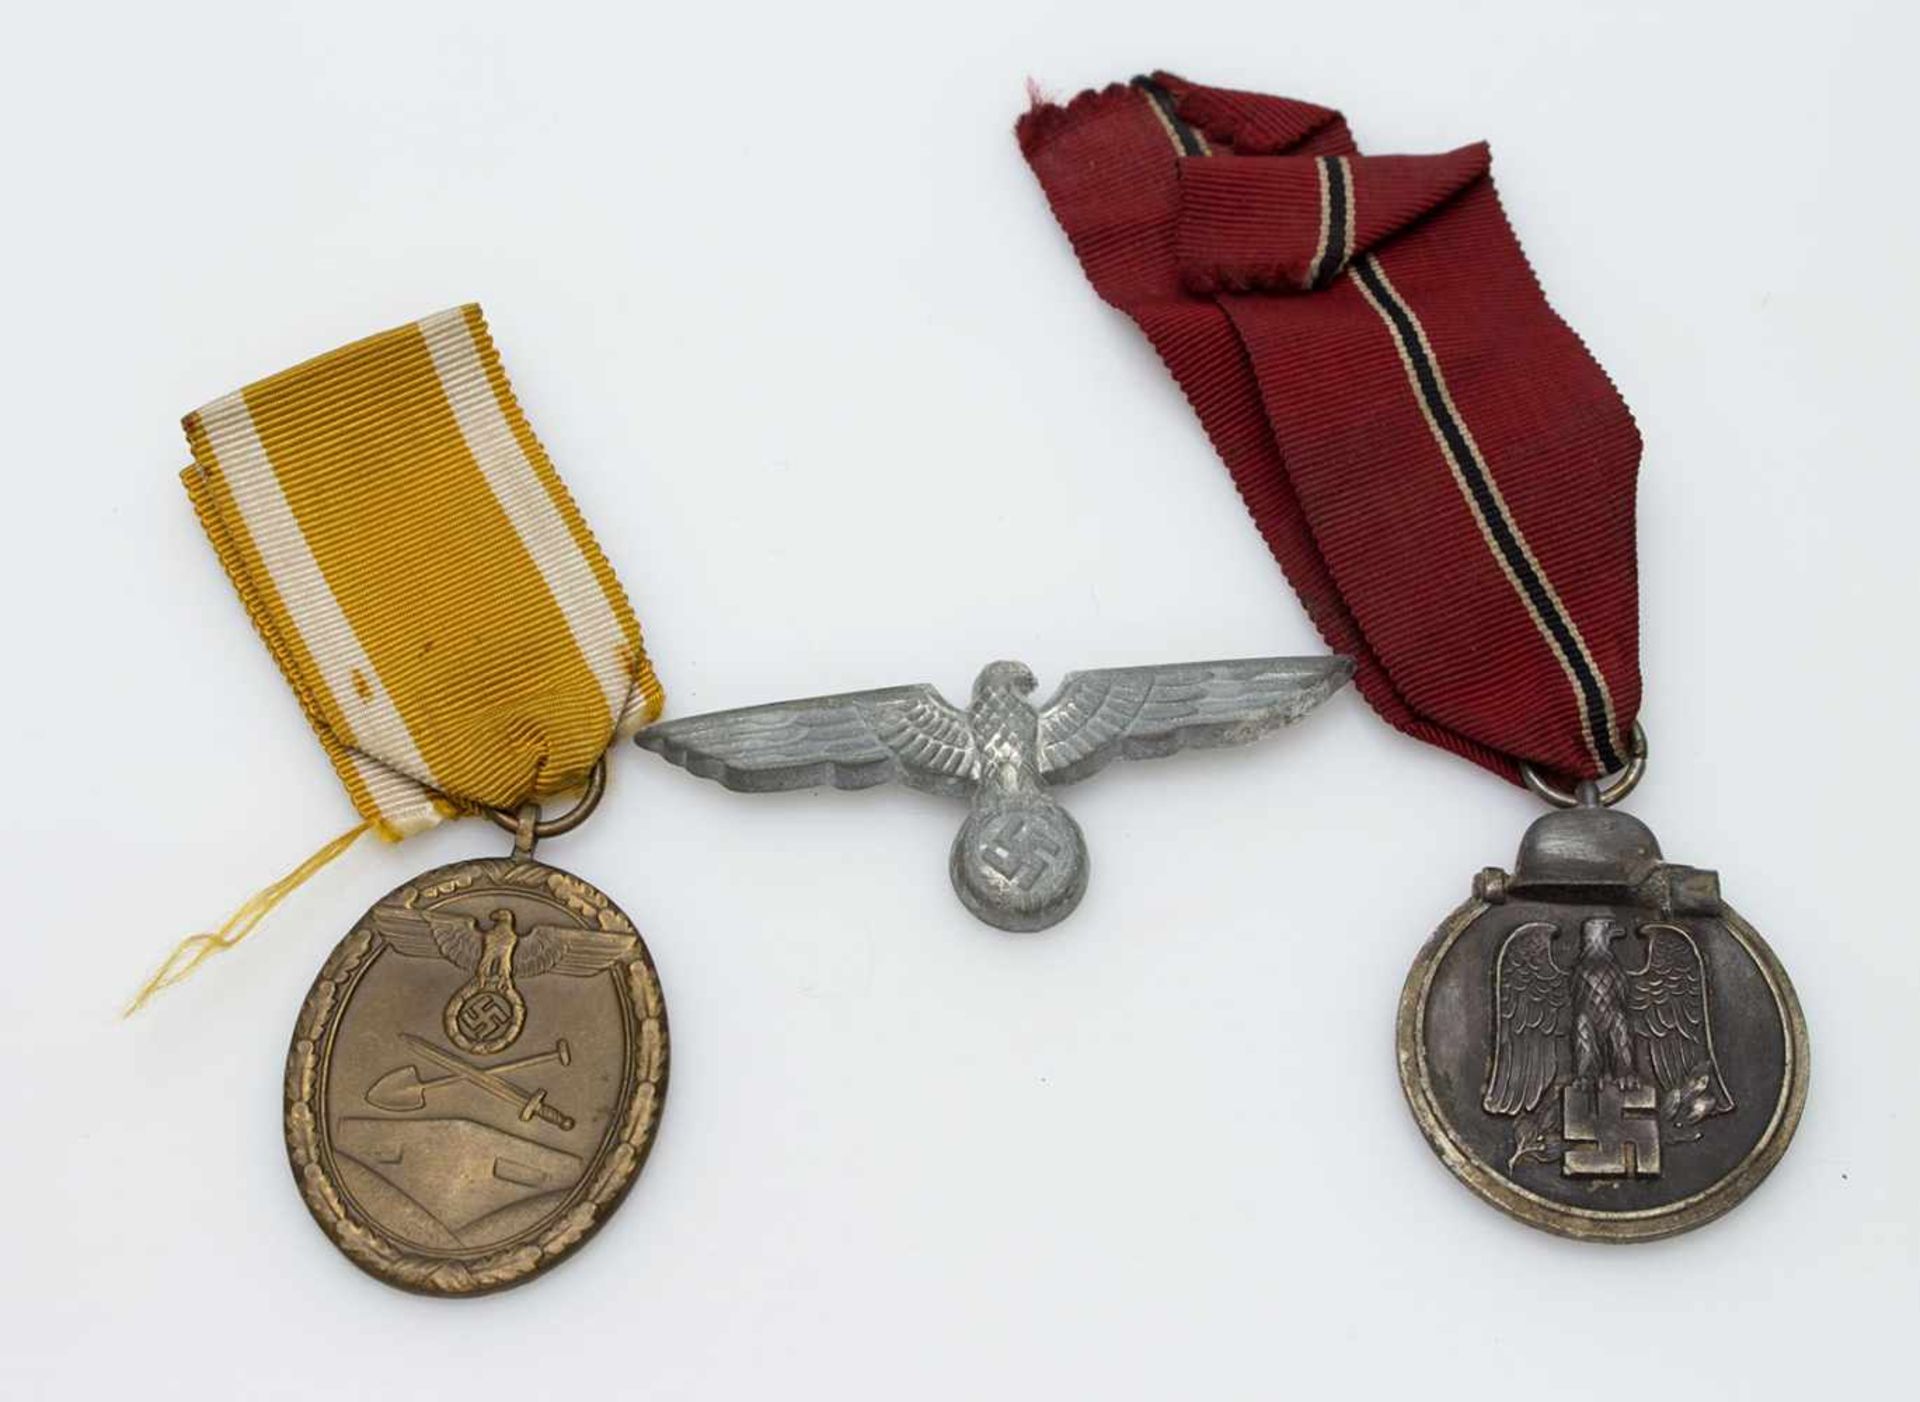 Lot III. Reich, Mützenadler, Ostmedaille u. Deutsches Schutzwall-Ehrenzeichen, beide am Band